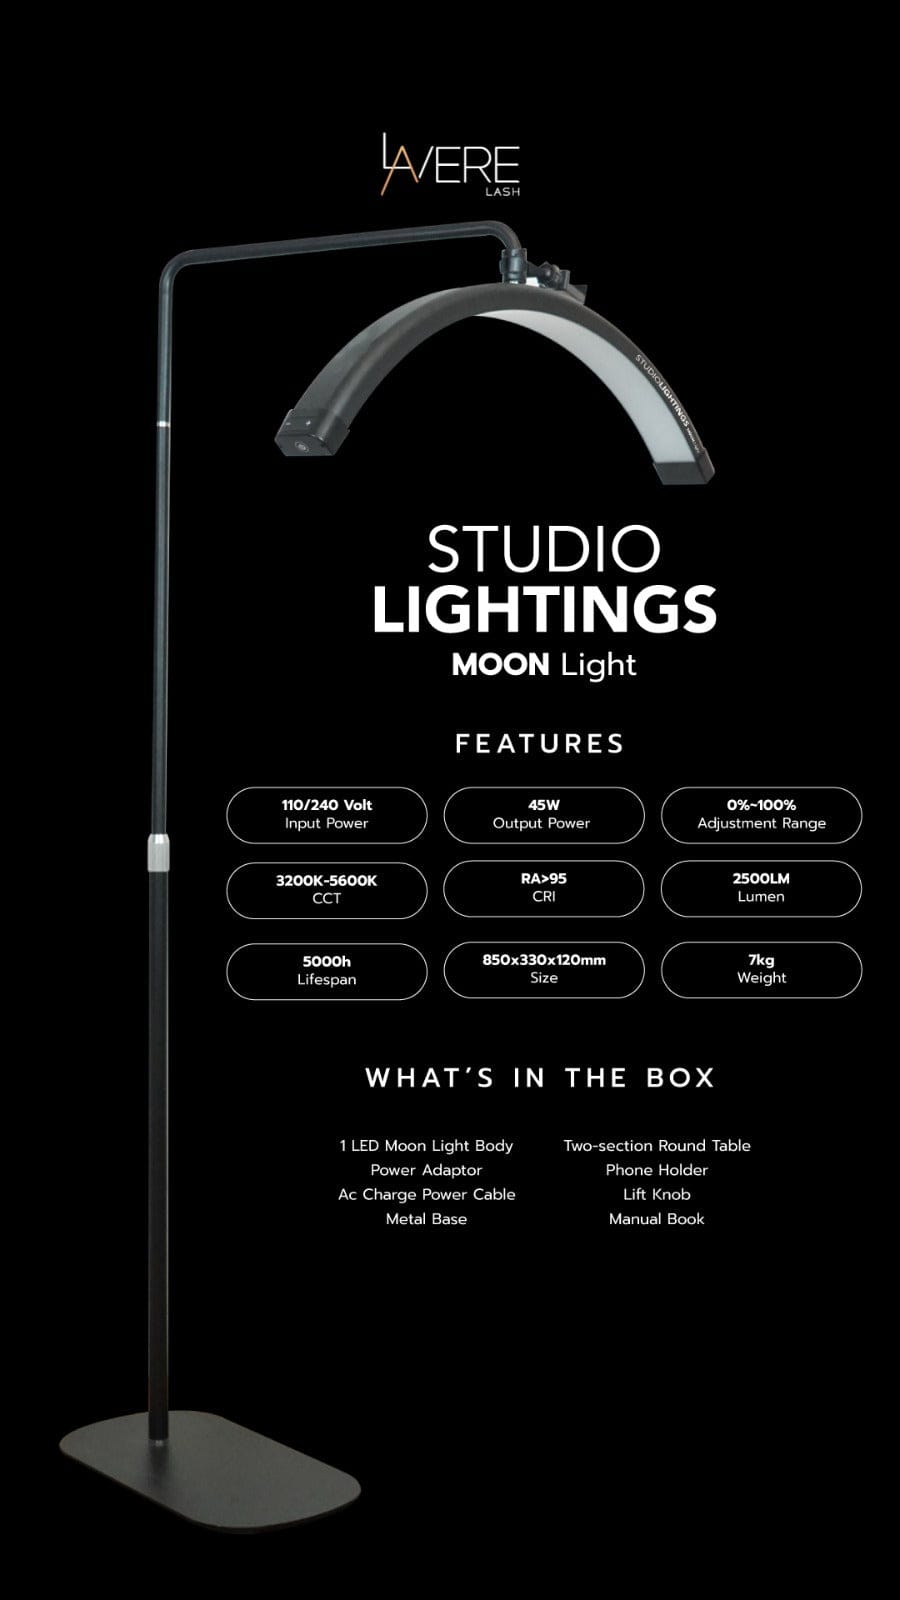 Studio Lightings Moonlight | Professional Lighting For Eyelash Extension & Make Up Artist (Brand New)